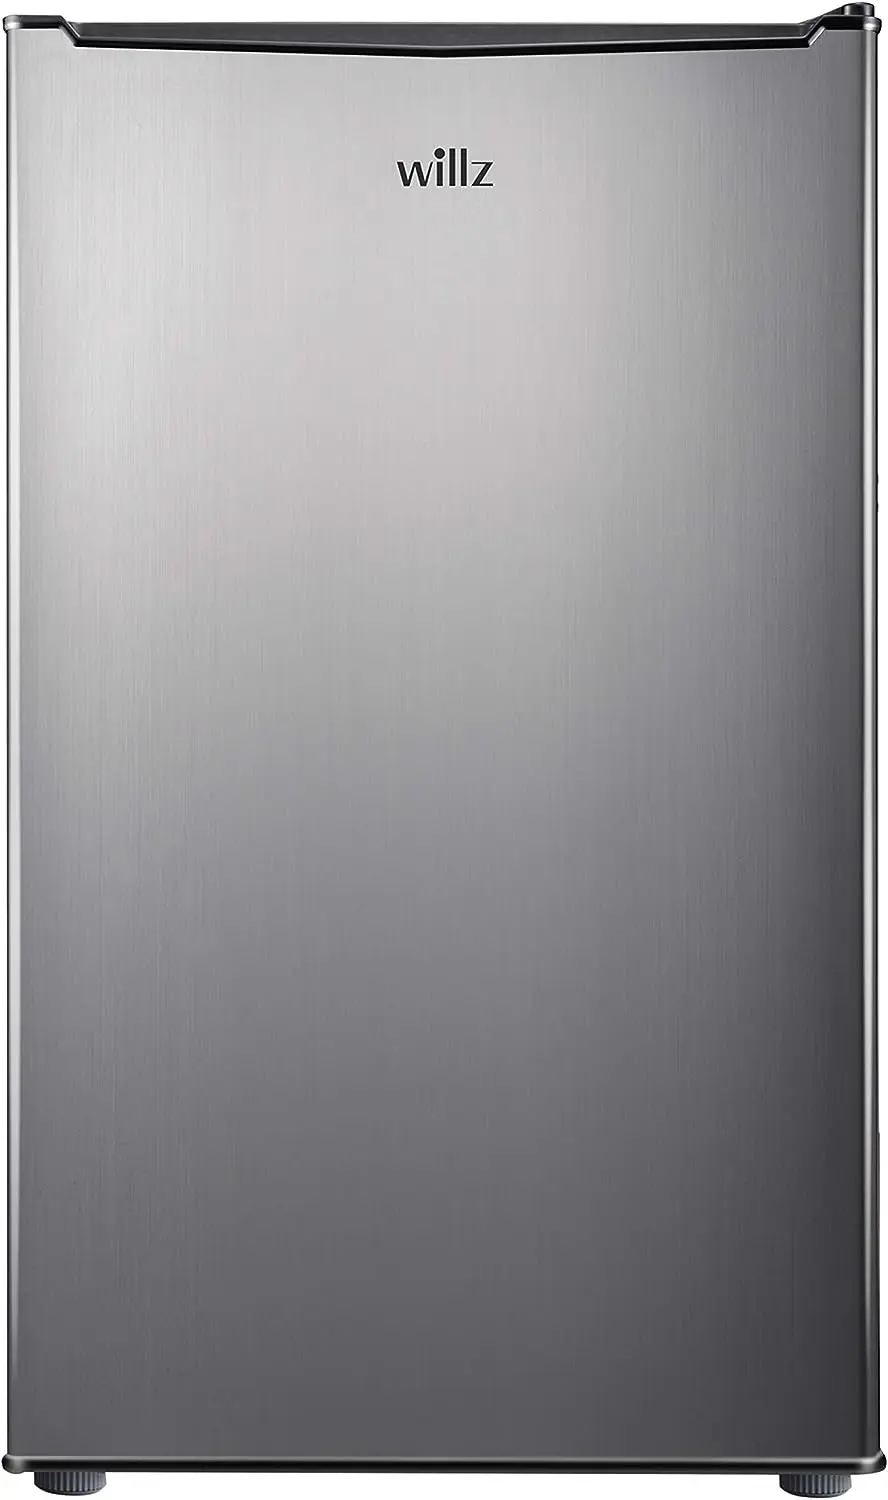 

Компактный холодильник, однодверный холодильник, регулируемый механический термостат с чиллером, внешний вид из нержавеющей стали, 3,3 кубических футов